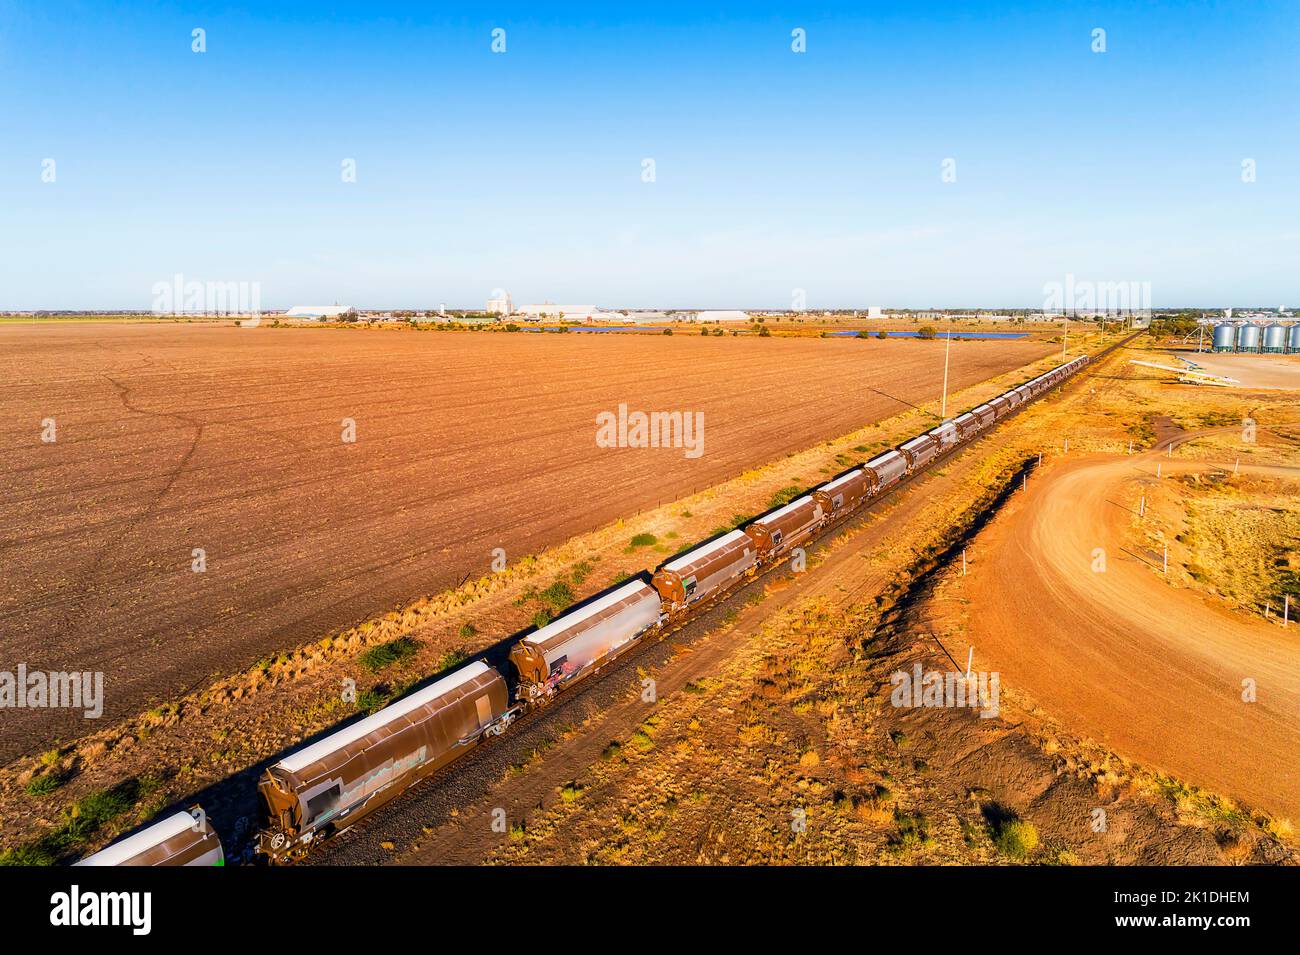 Tren de carga de grano largo en el elevador de almacenamiento de silos en la ciudad de Moree de la cuenca artesiana australiana. Foto de stock